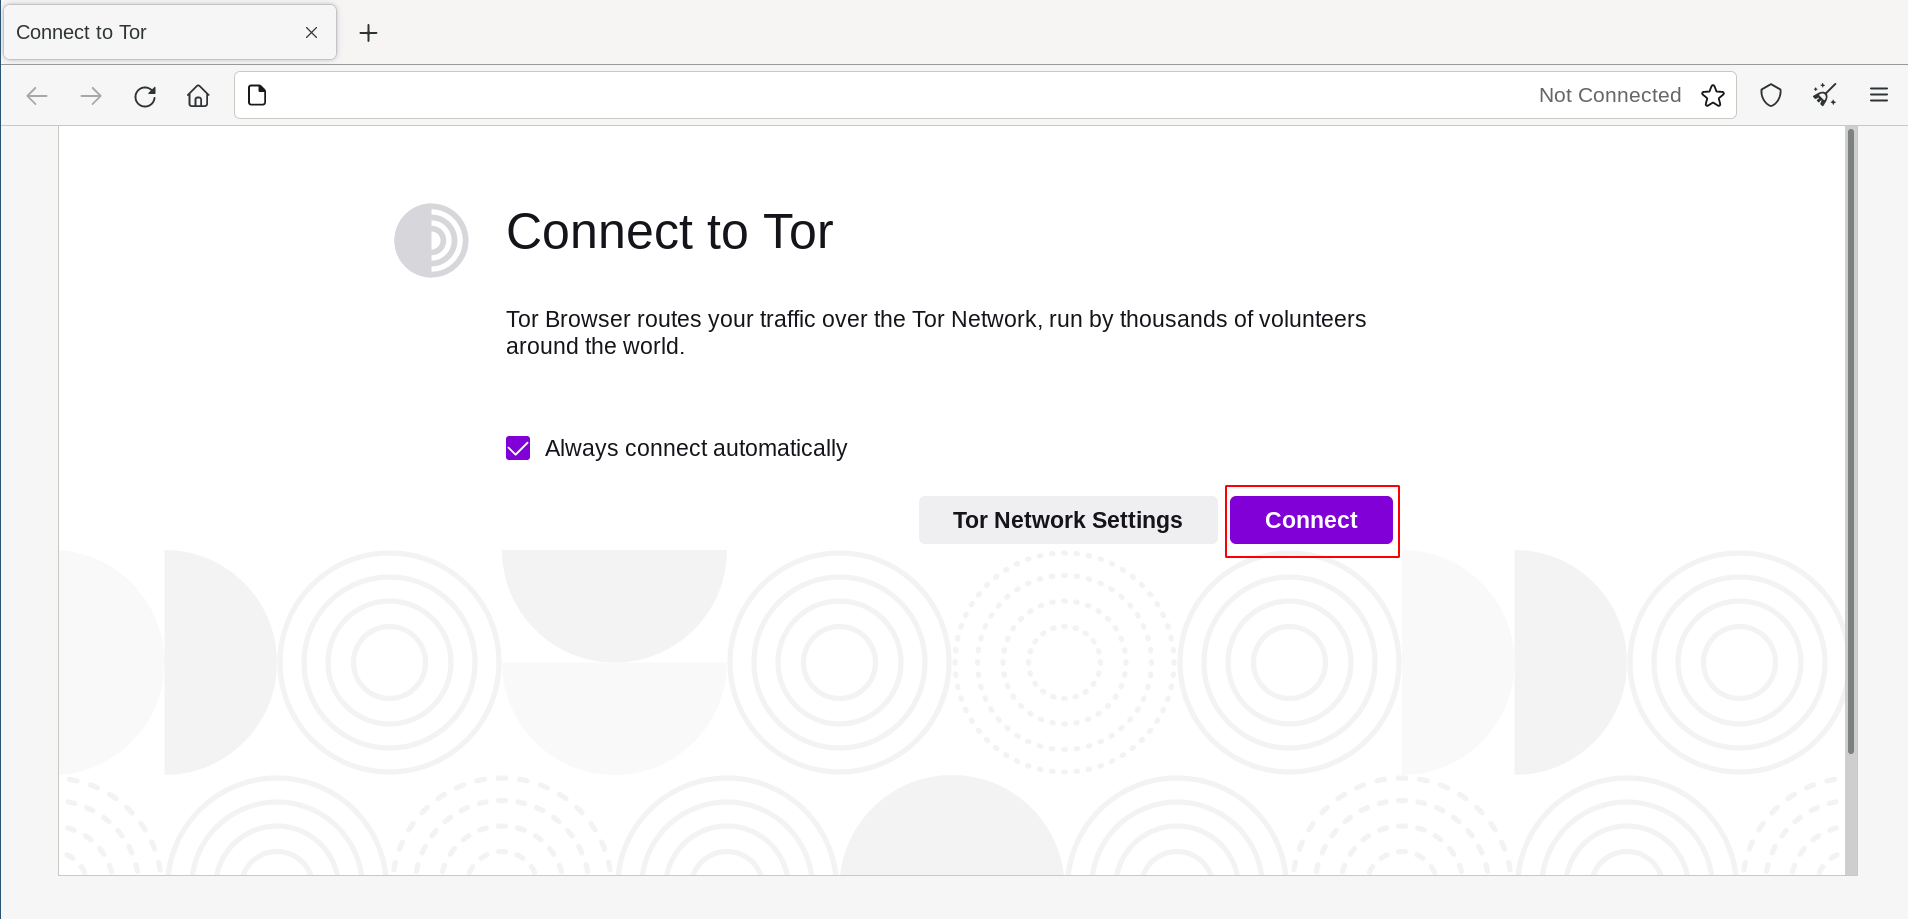 Clic en 'Conectar' para conectar a Tor